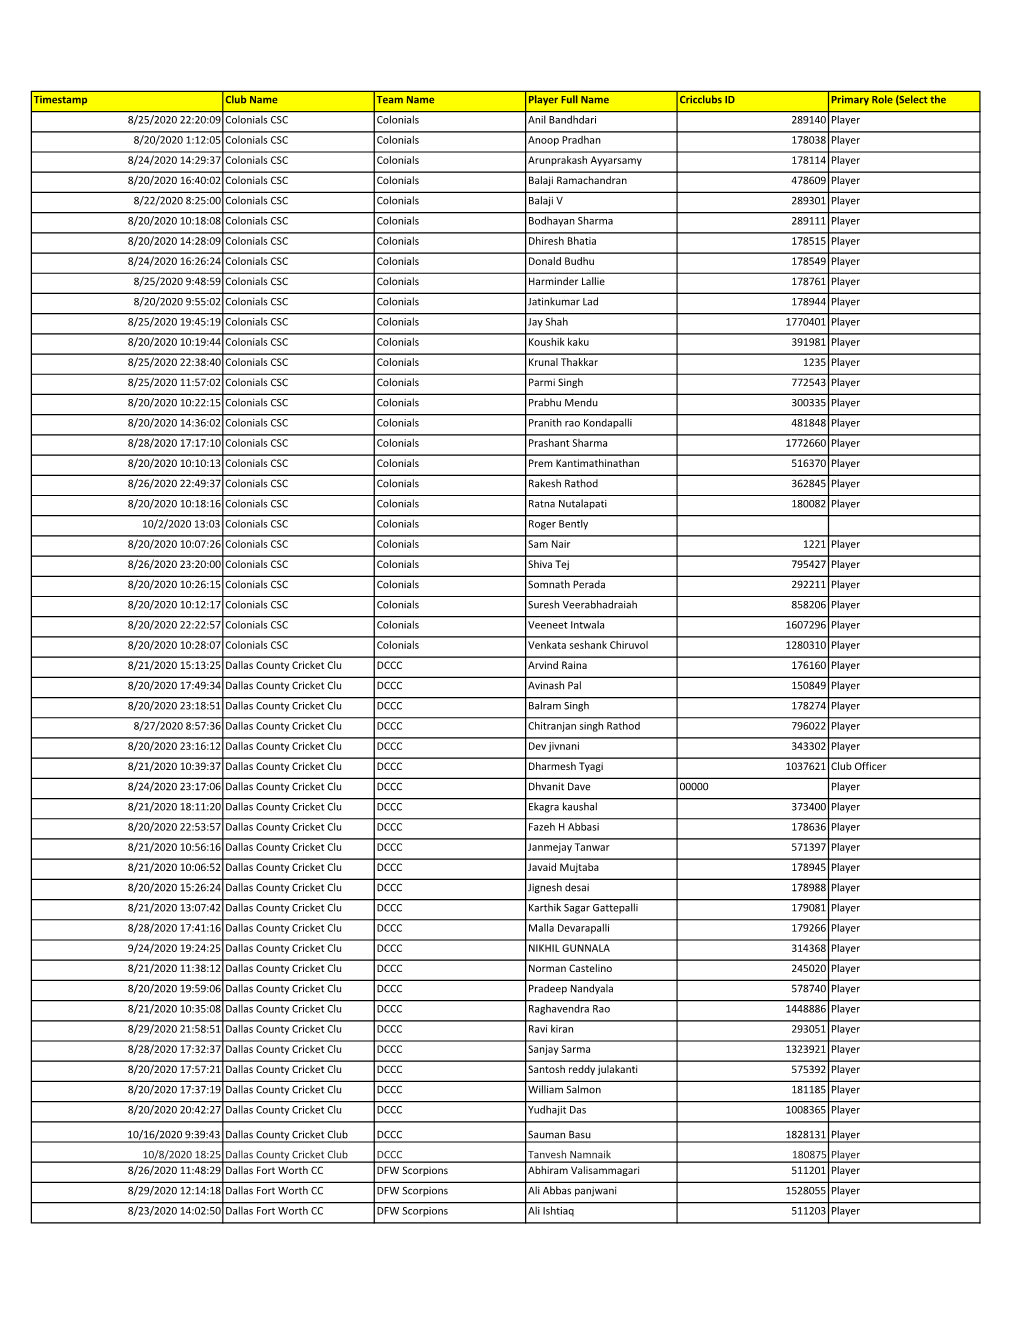 2020 NTCA T20 Player Participation Waiver List